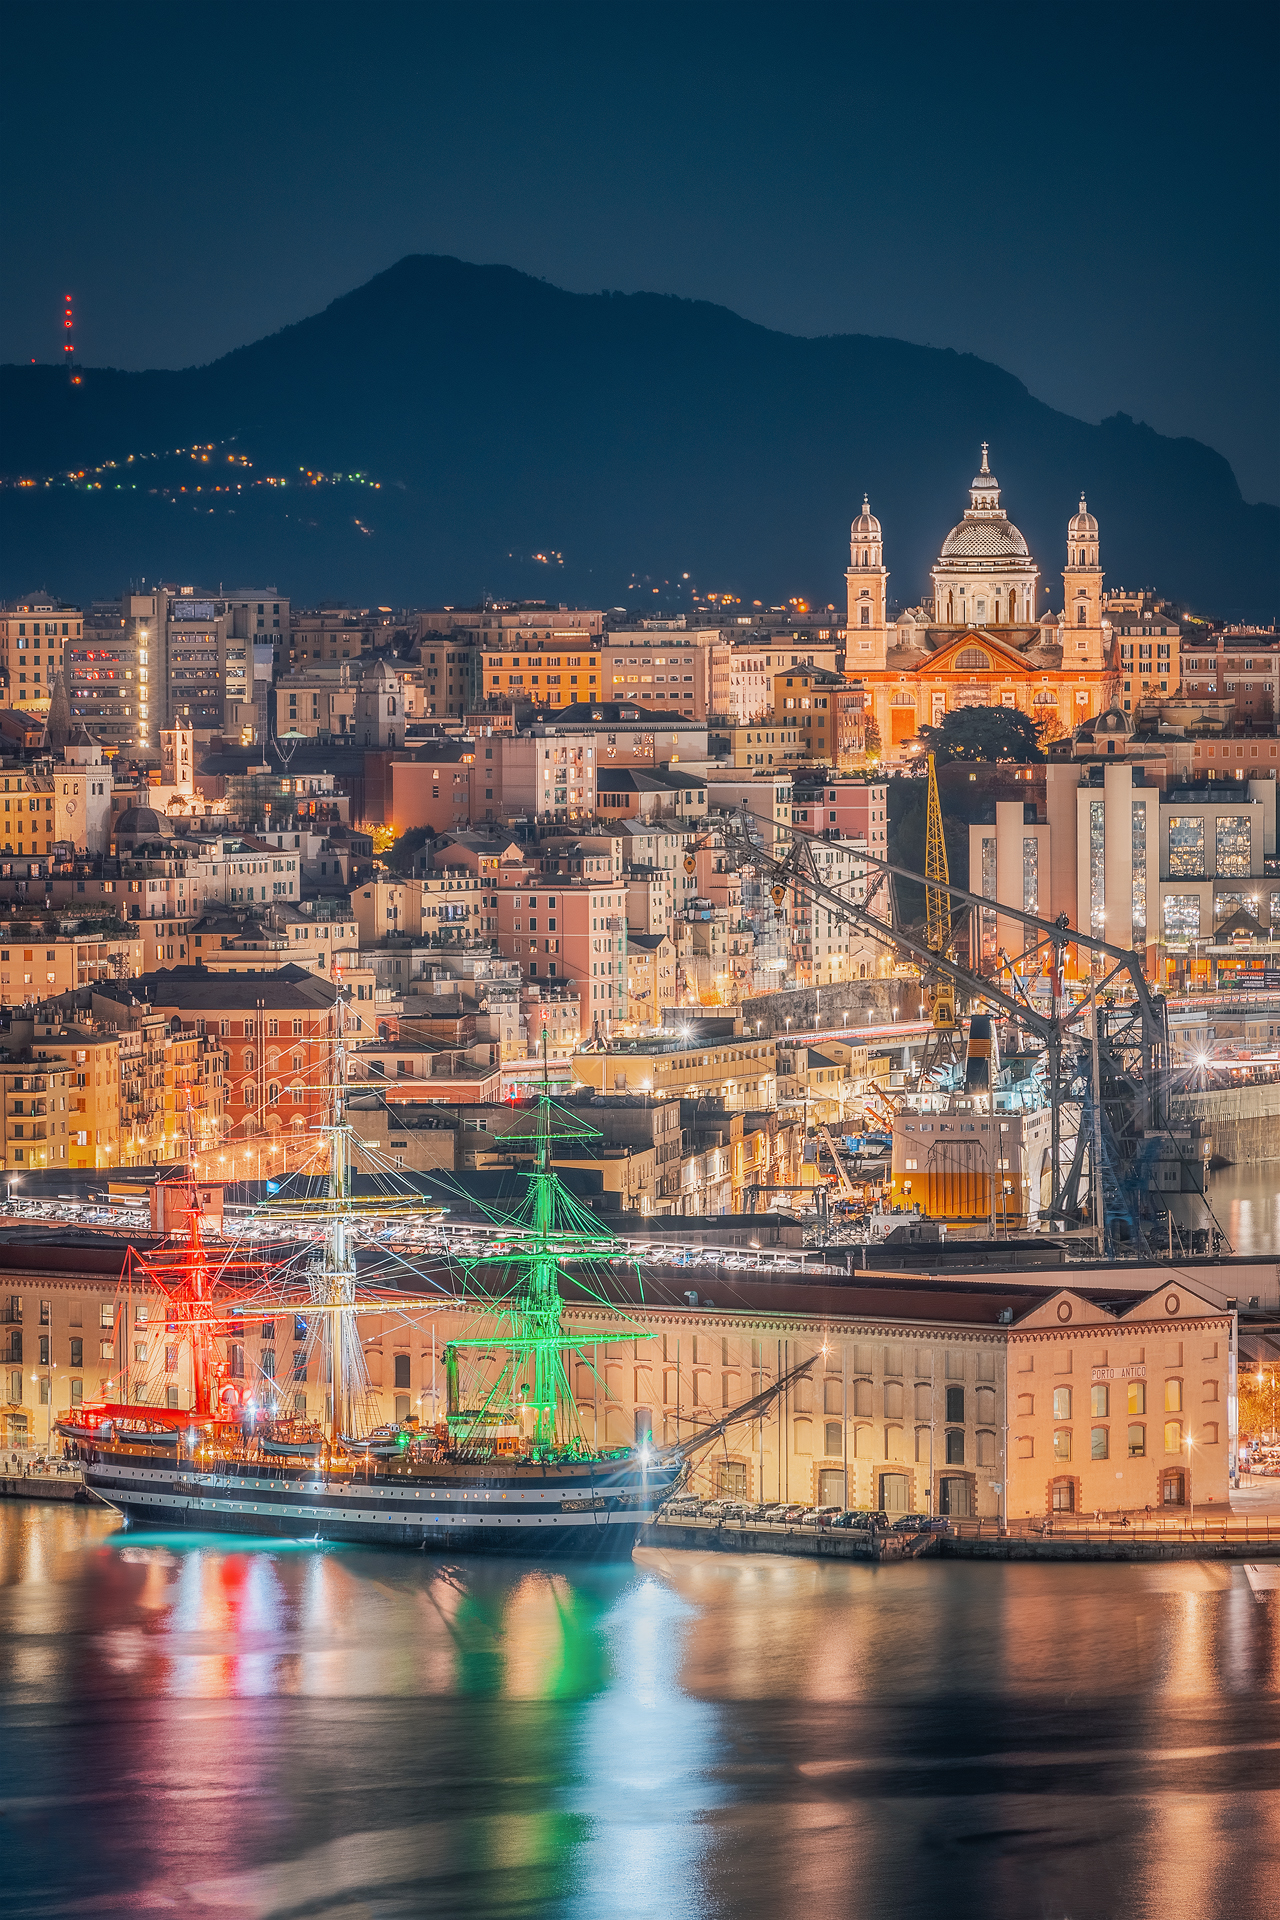 The Amerigo Vespucci and the colors of Genoa...